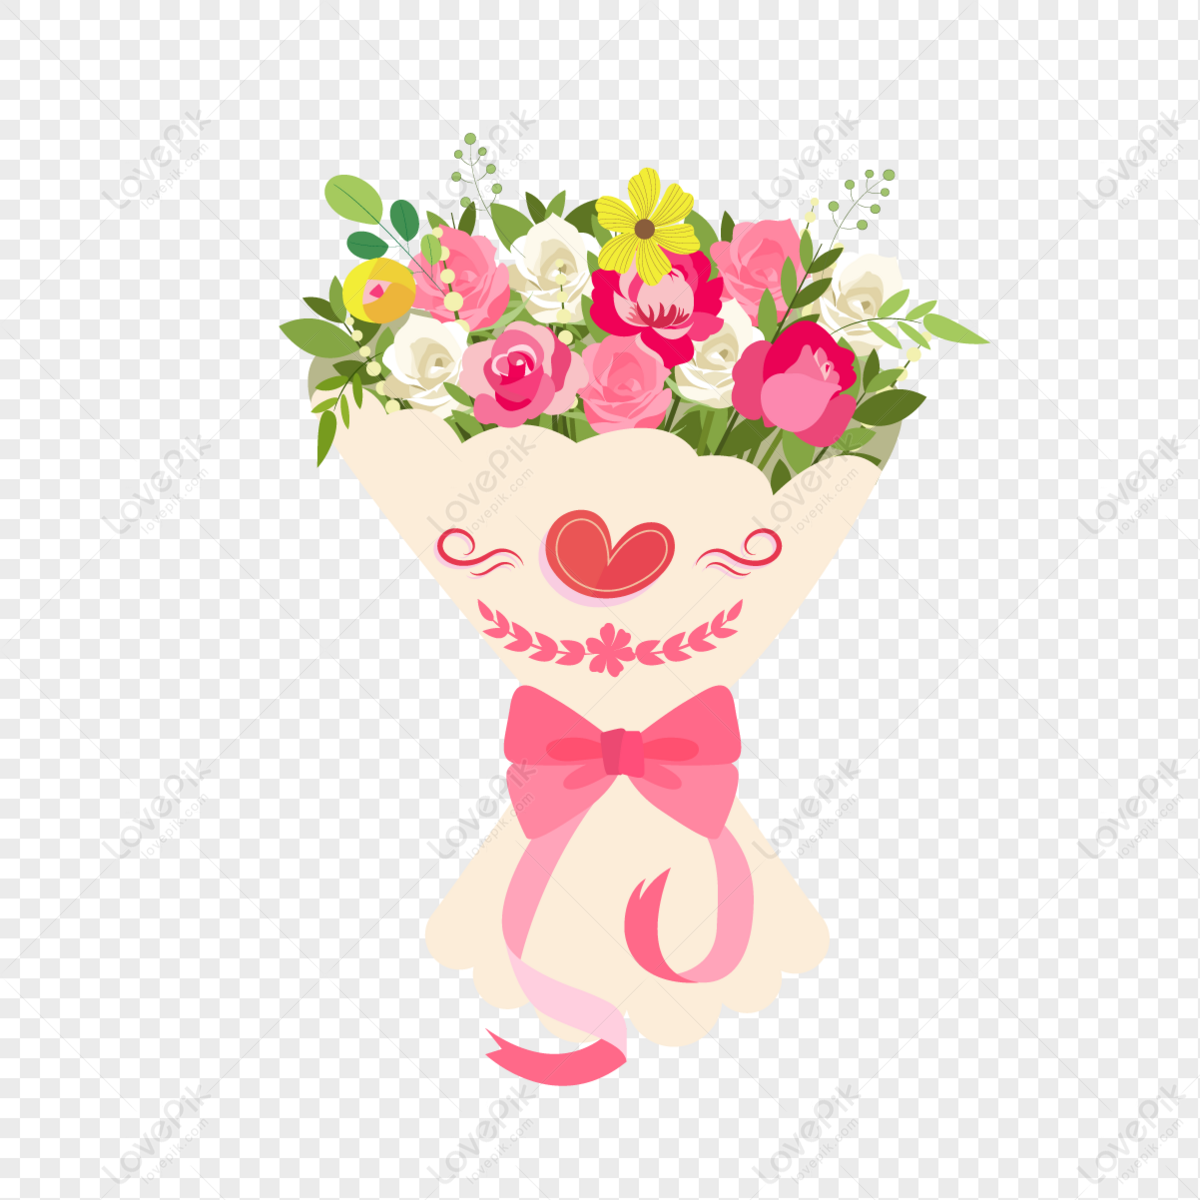 Chào mừng đến với mùa Valentine ấm áp và ngọt ngào. Hãy xem những hình ảnh về hoa Valentine miễn phí đầy xúc cảm và tình yêu. Chúng tôi hy vọng bạn sẽ tìm thấy được bức tranh hoàn hảo để dành tặng cho người mình yêu thương.